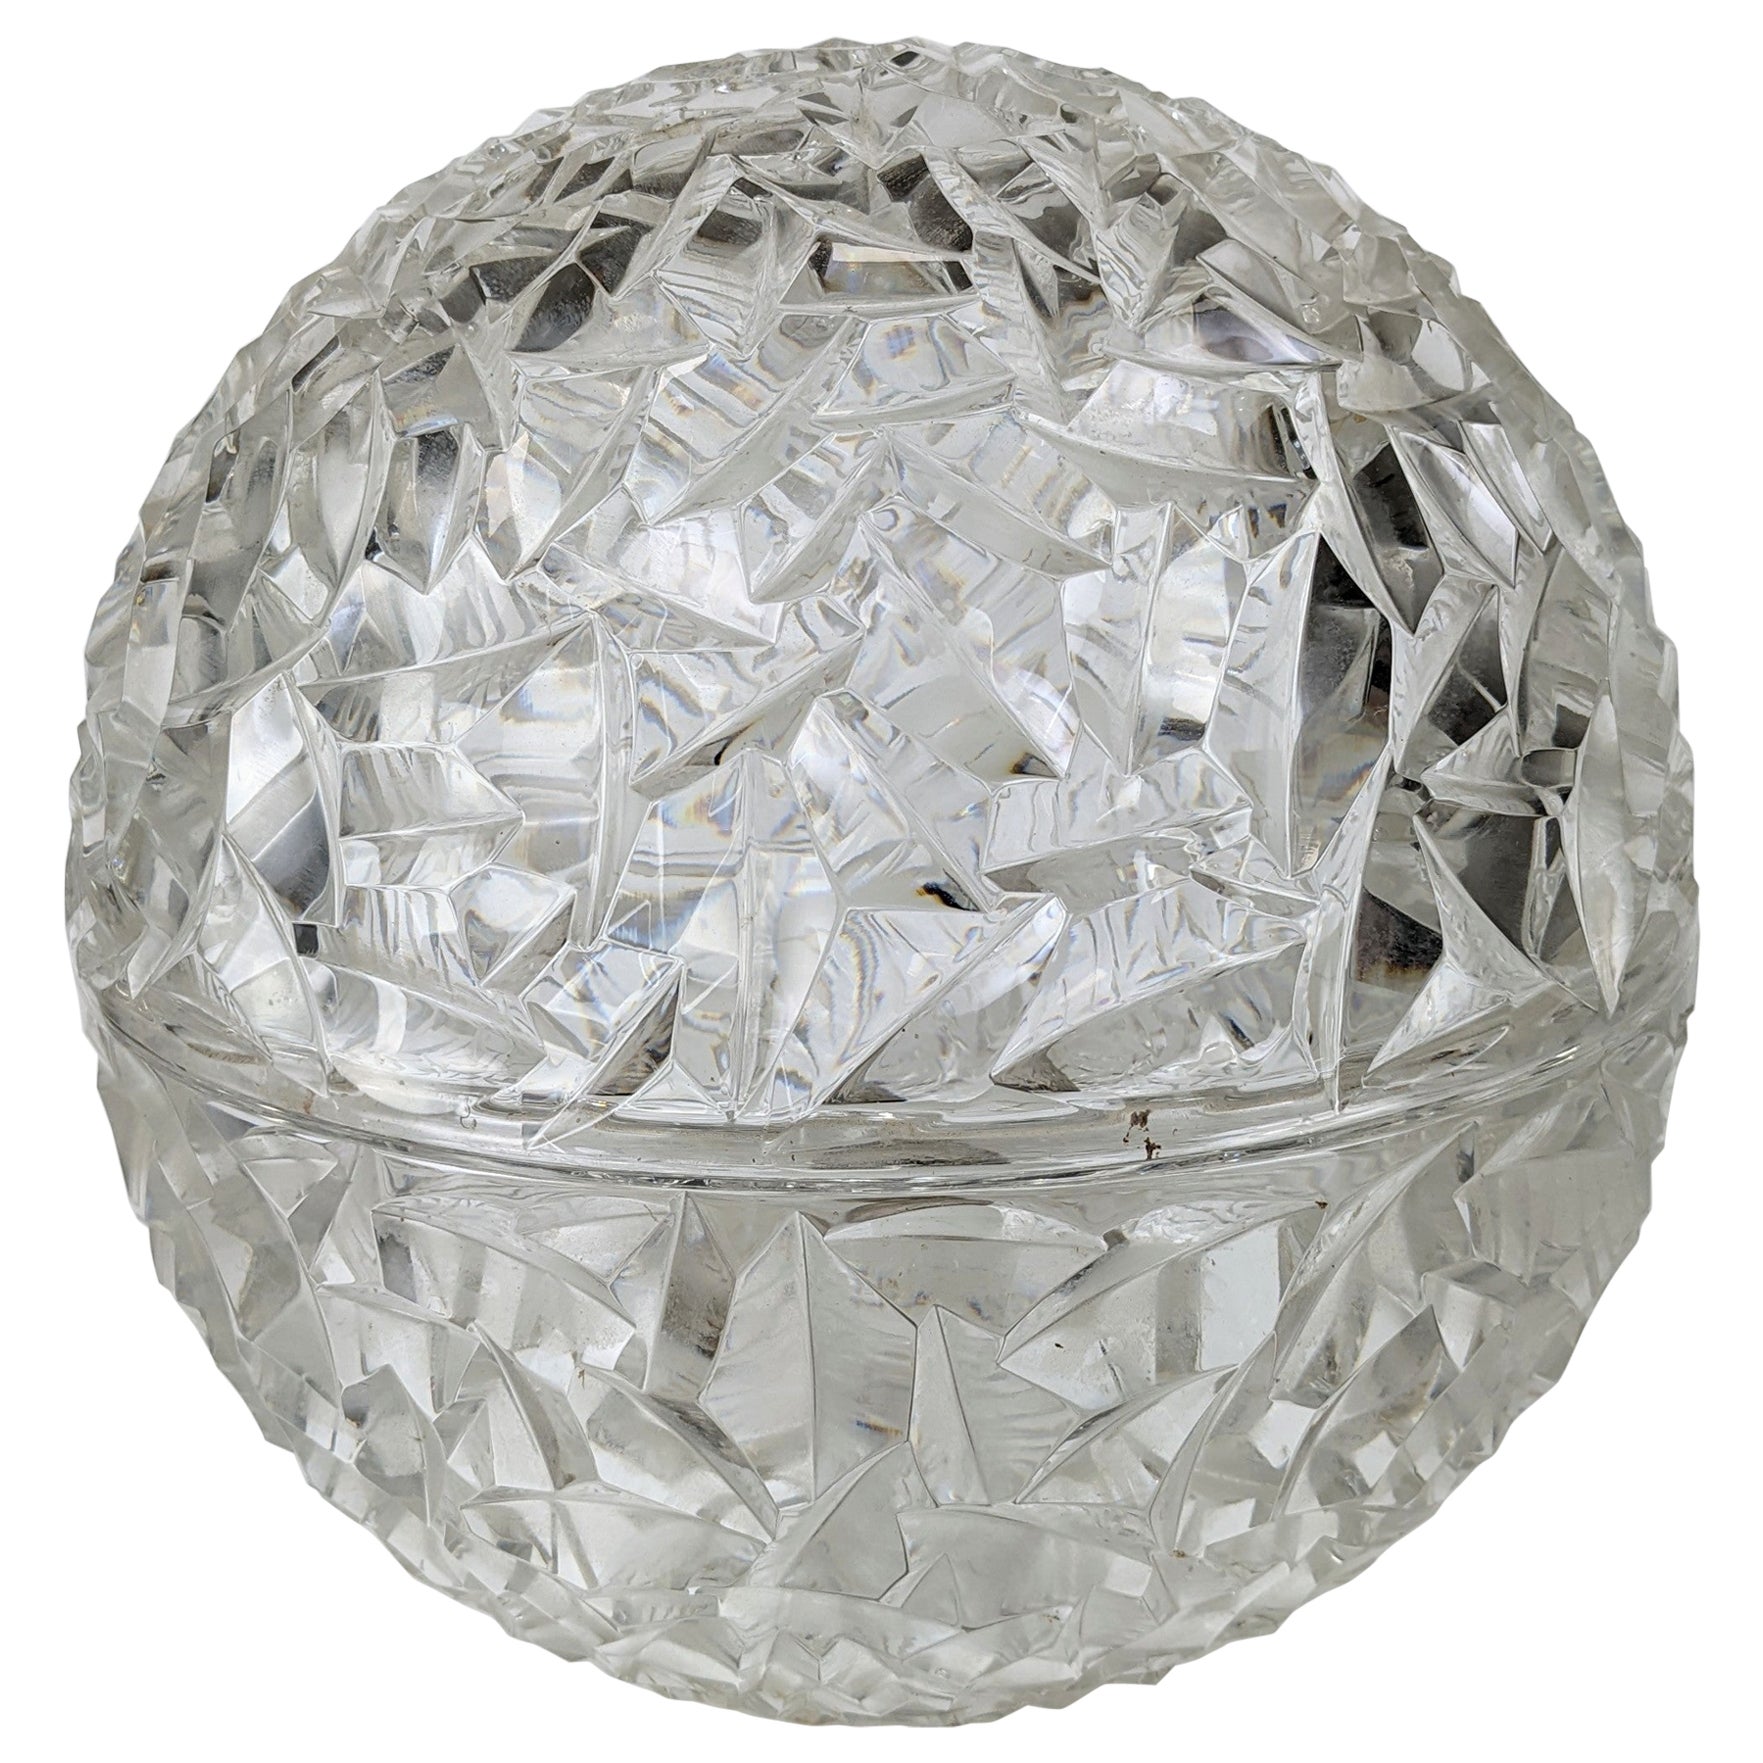 Elegant Faceted Crystal Globe Lamp For Sale